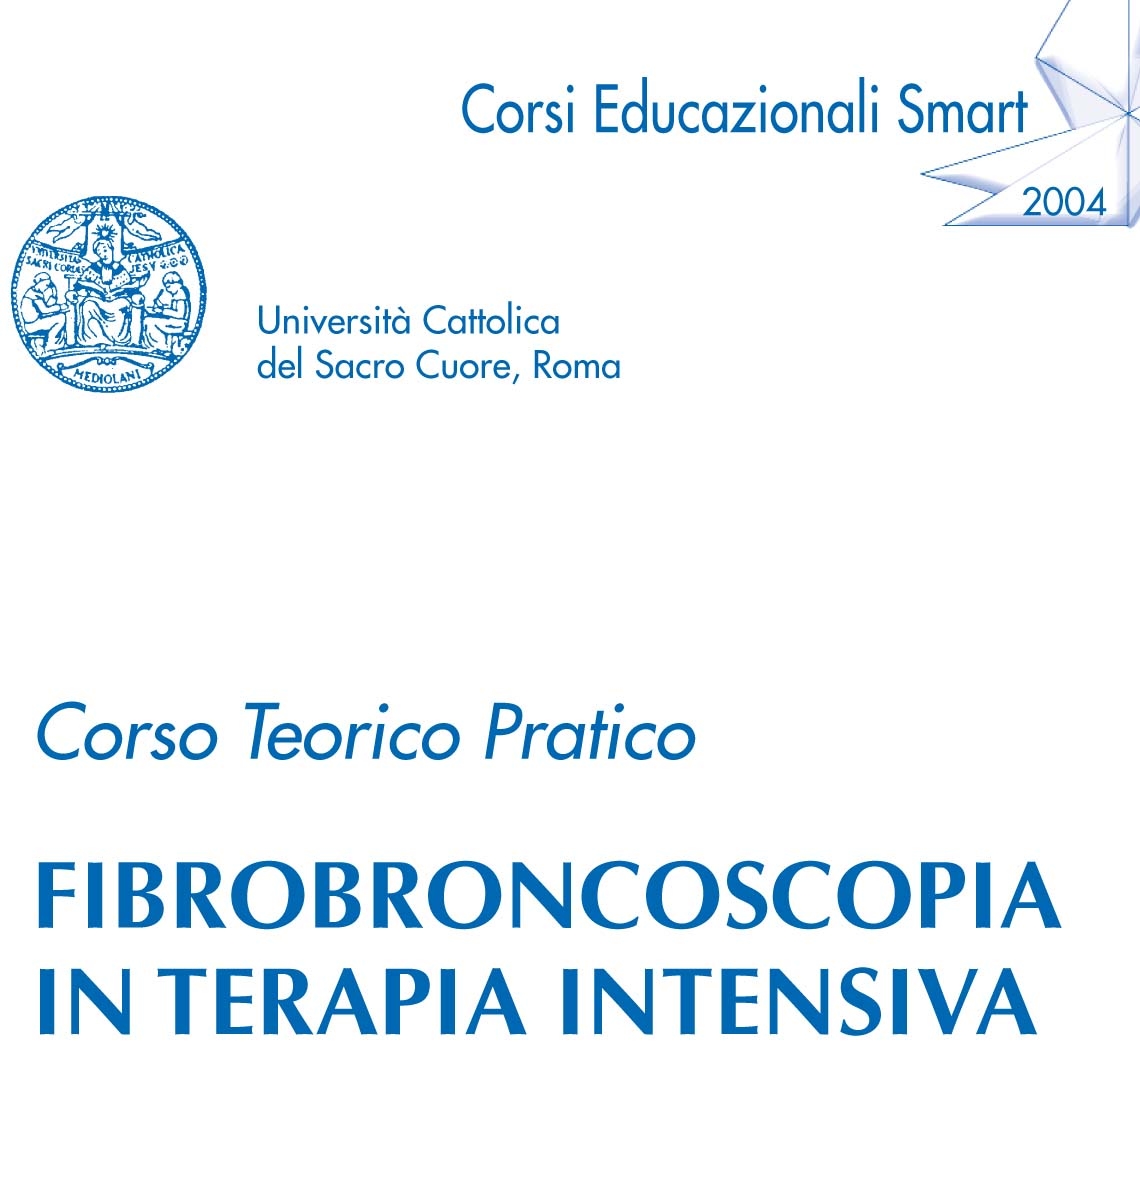 Corso Teorico Pratico: Fibrobroncoscopia in terapia intensiva 2004